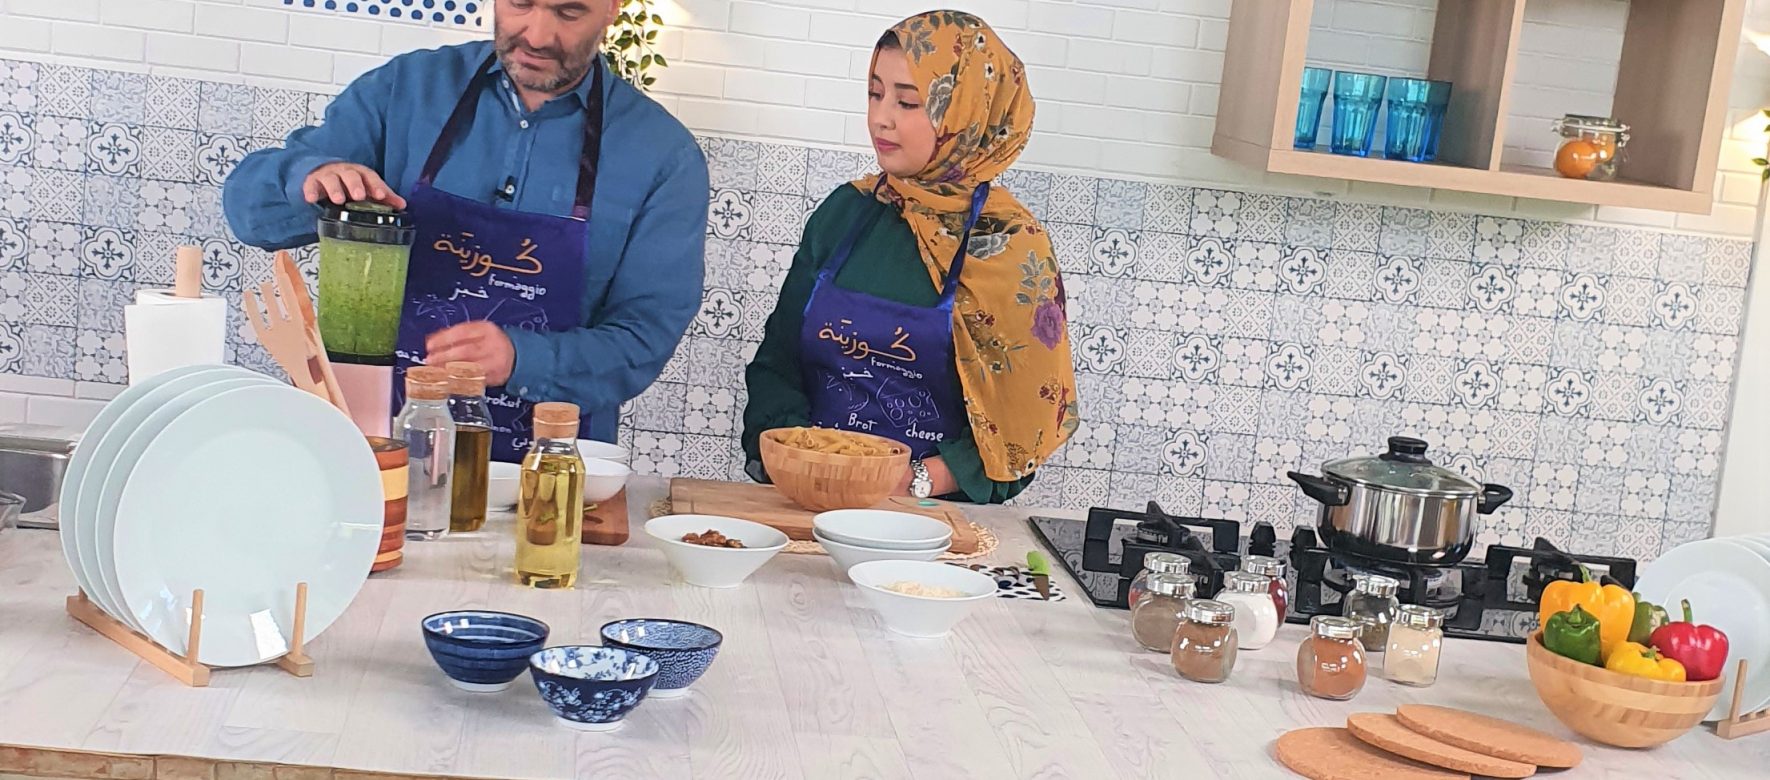 Maroc : A découvrir une web série culinaire spéciale pour le mois de ramadan